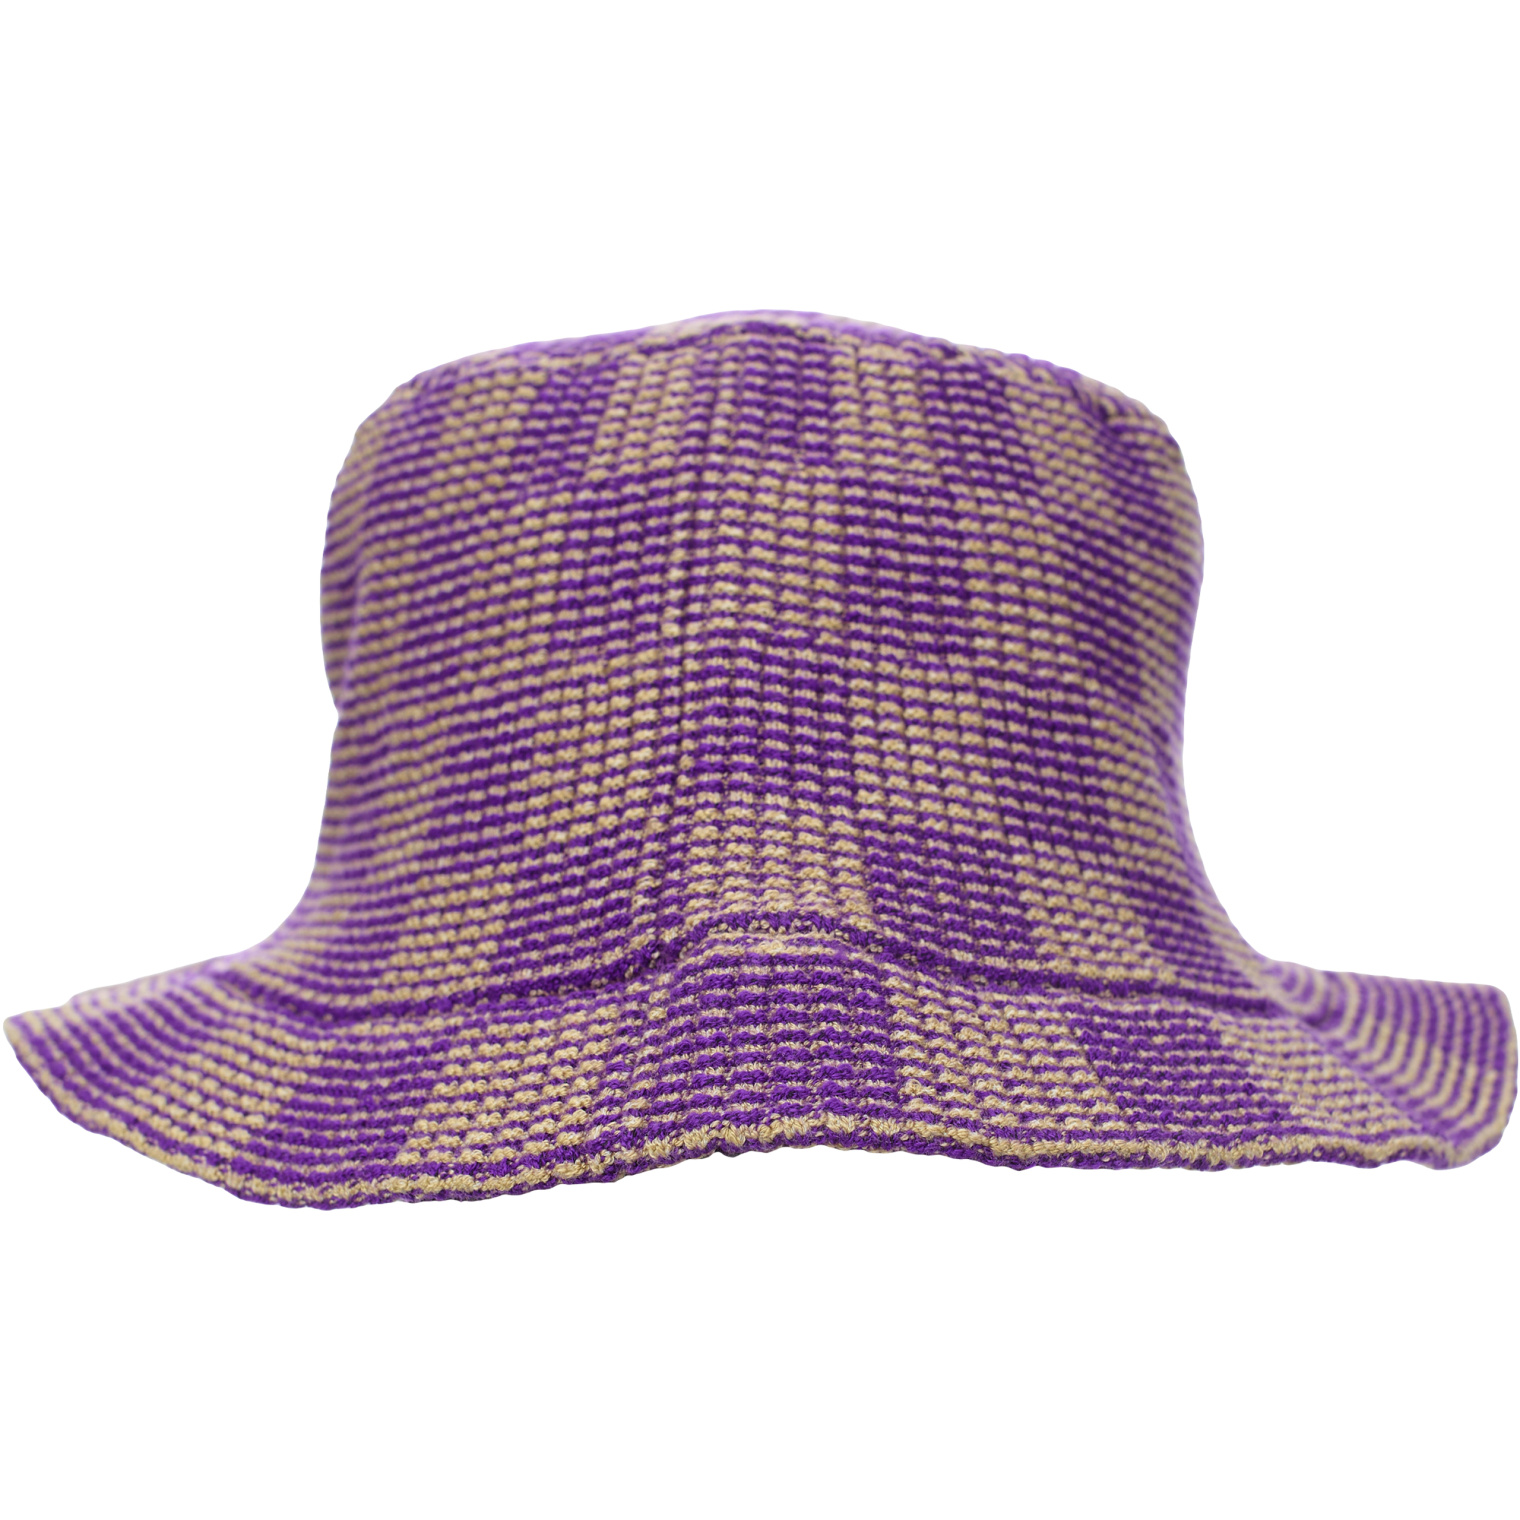 Isa Boulder Knit hat